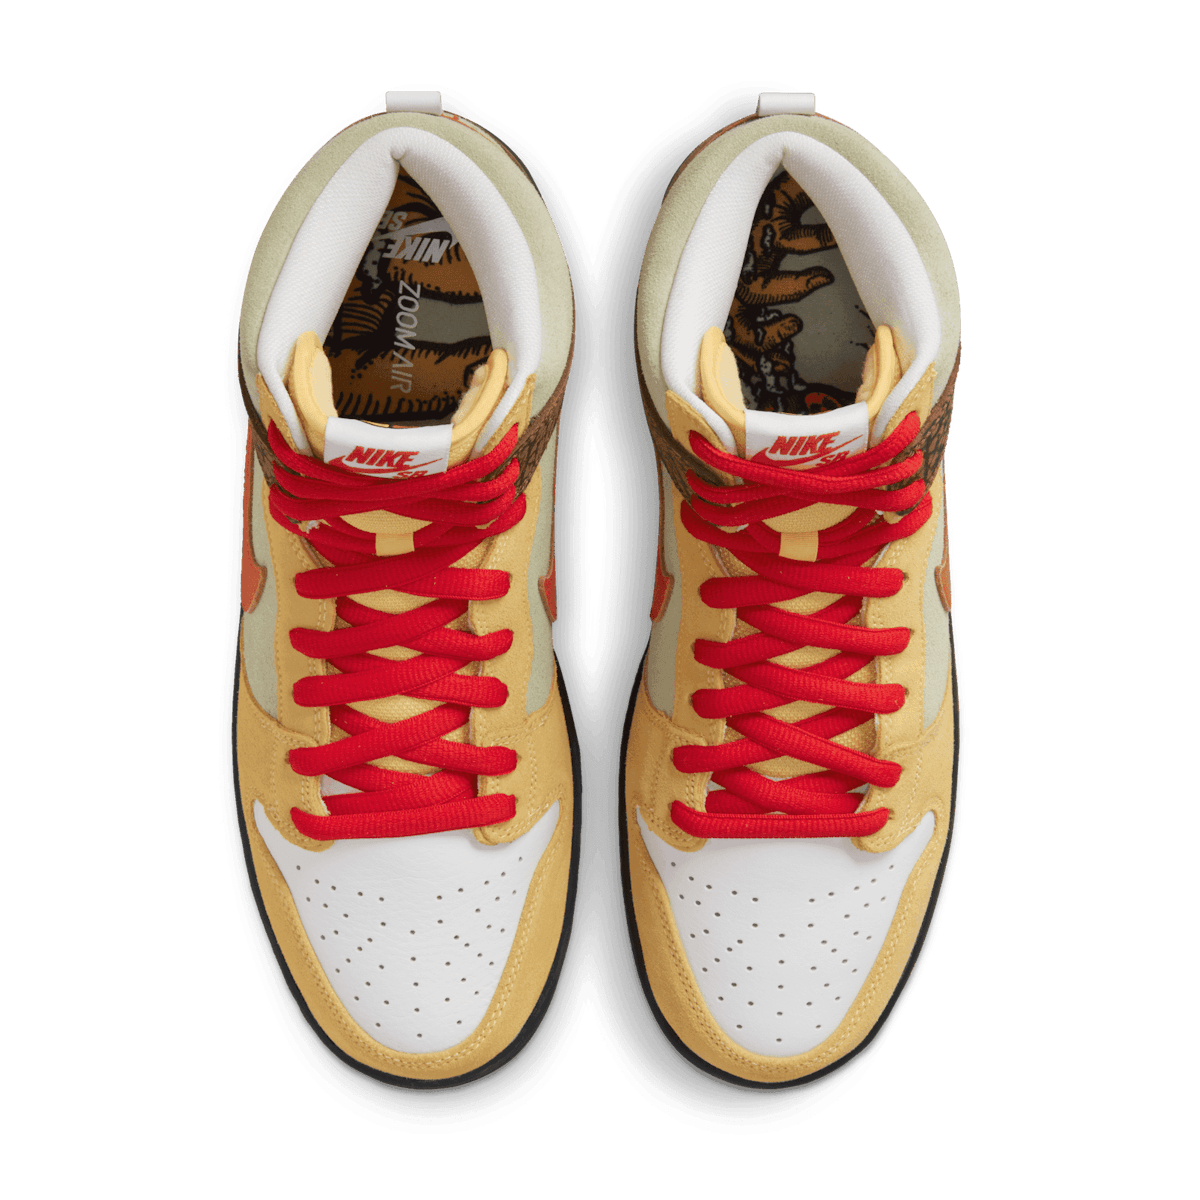 Nike Color Skates SB Dunk High Kebab And Destroy Angle 1